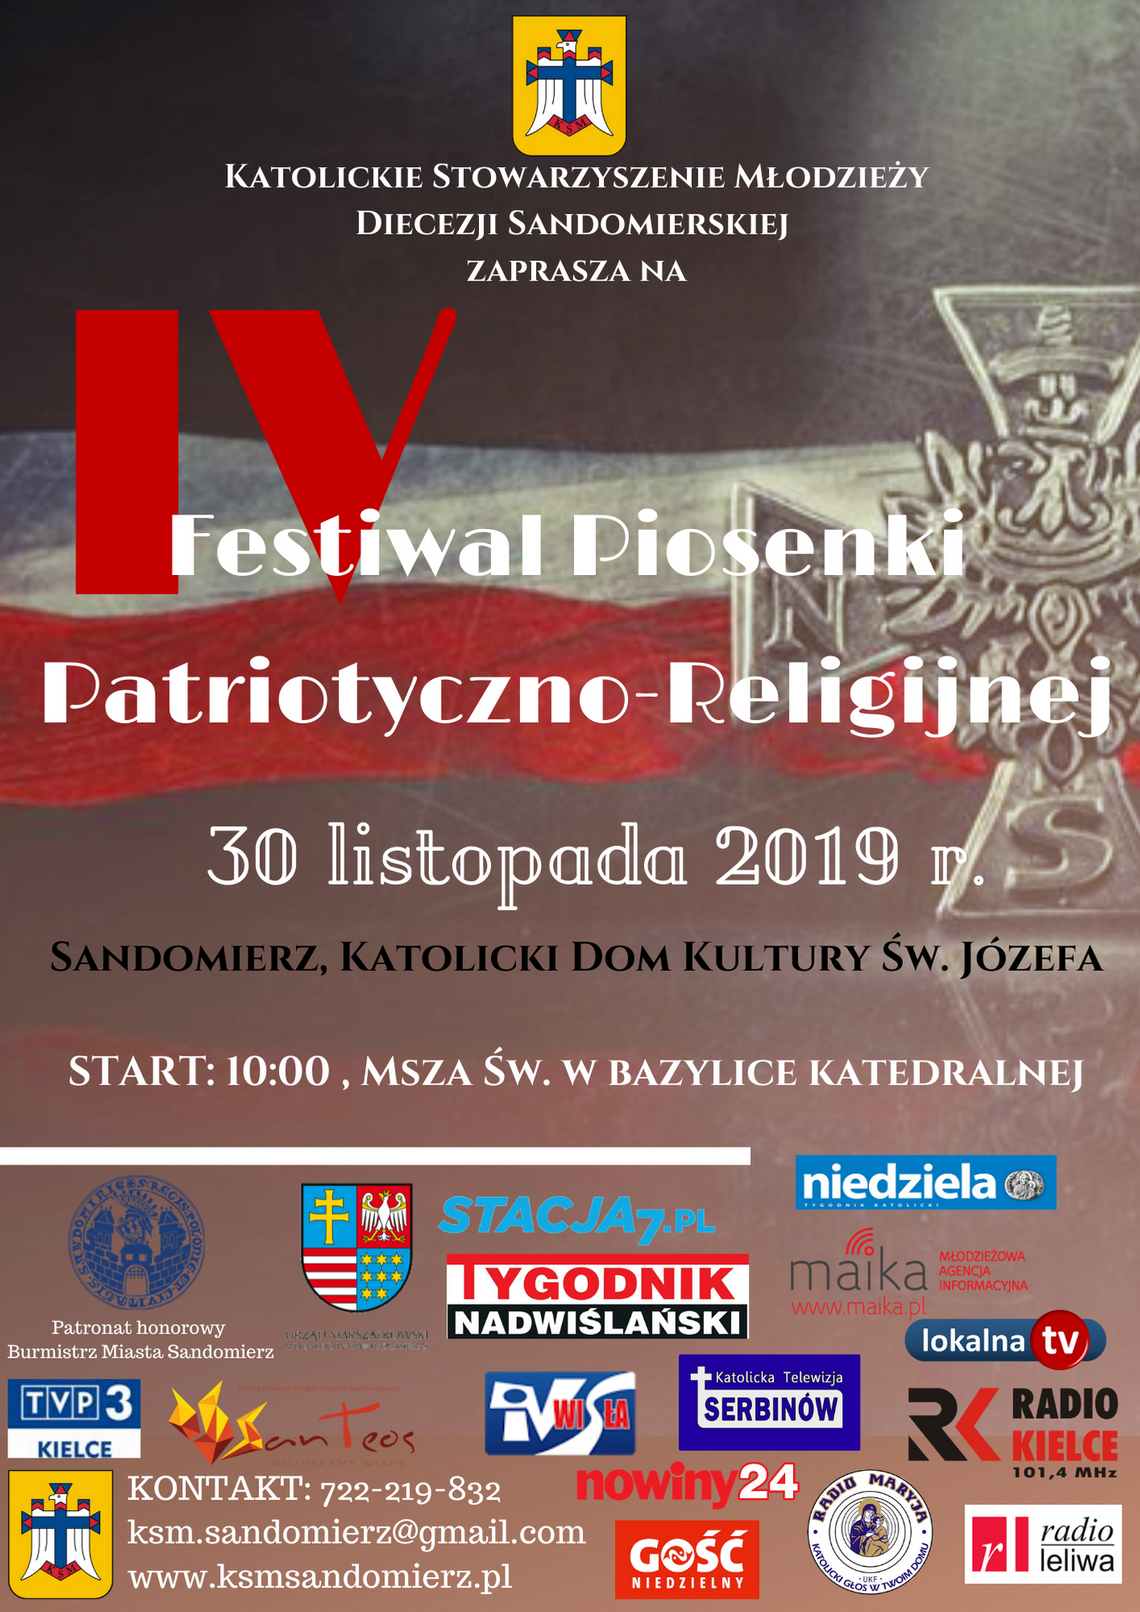 IV Festiwal Piosenki Patriotyczno-Religijnej przed nami!